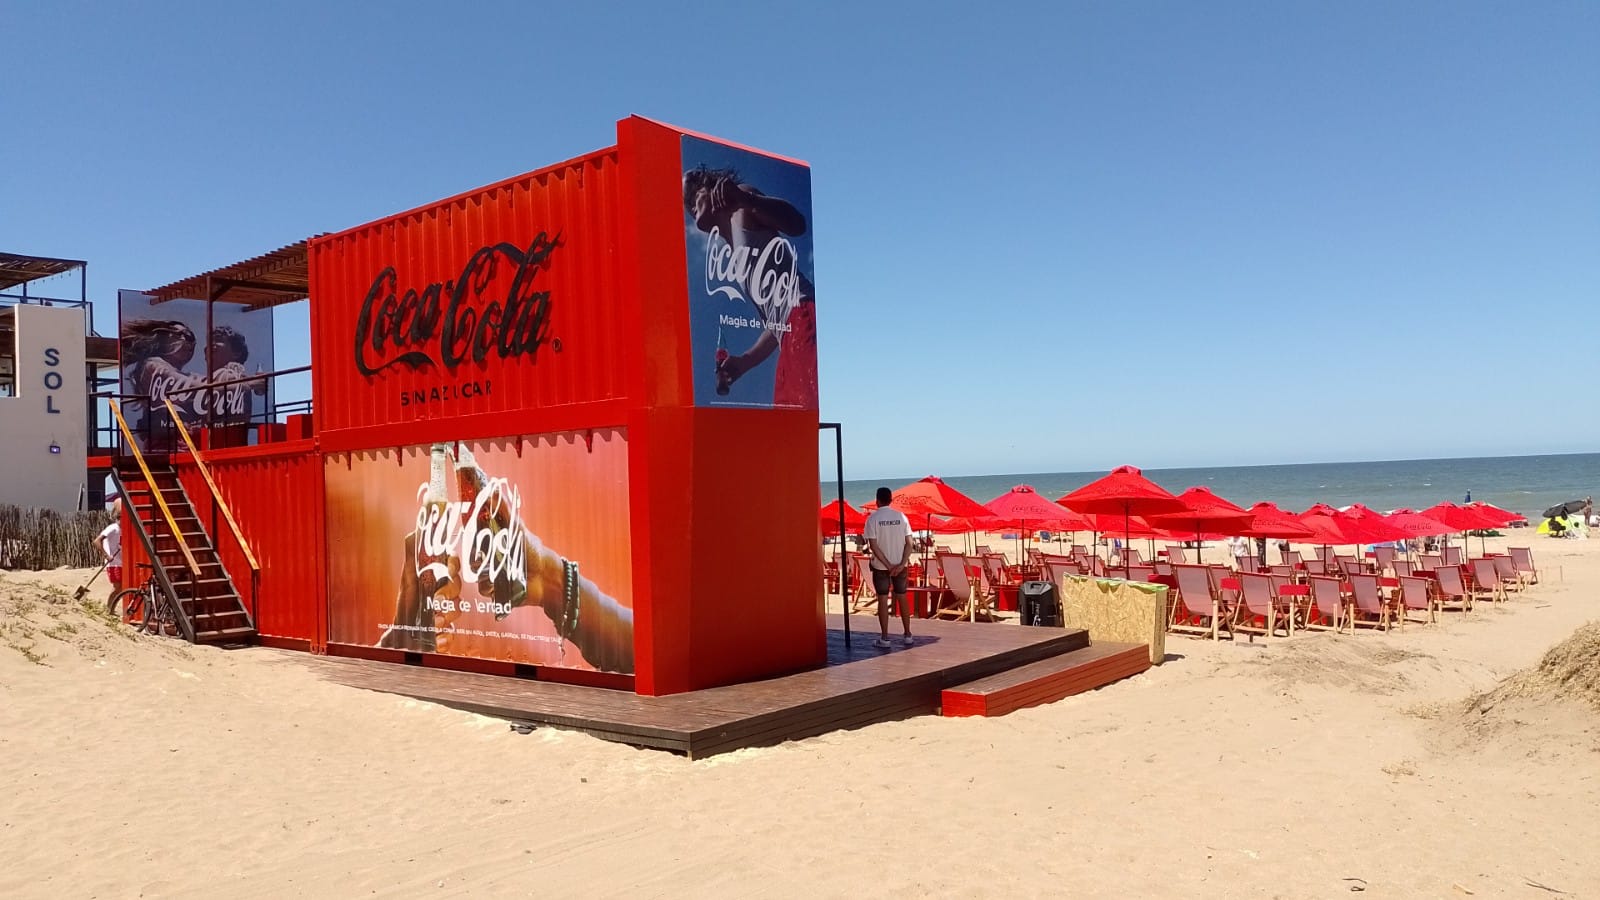 Coca-Cola presenta sus acciones de verano para el cuidado del ambiente en diferentes centros turísticos del país – Marcela Fittipaldi Magazine